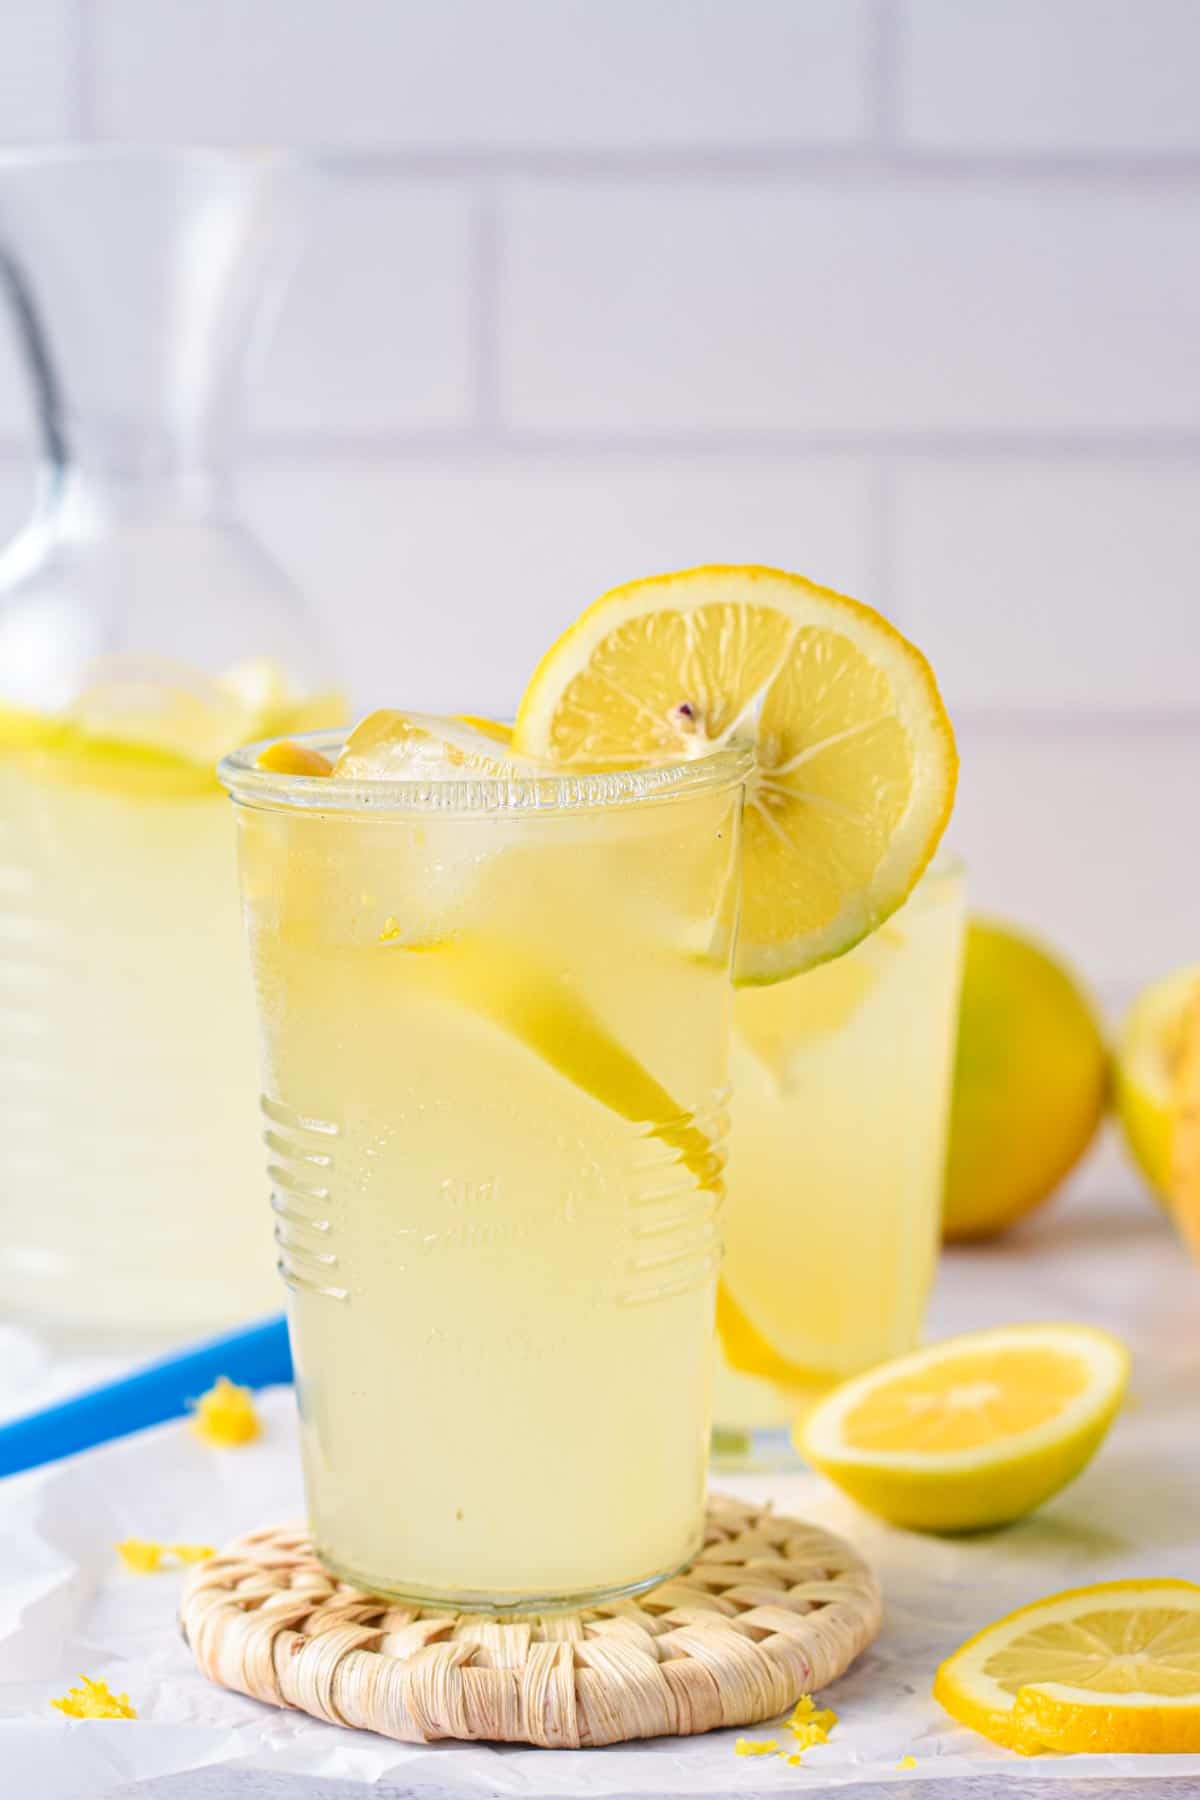 Sugar free lemonade